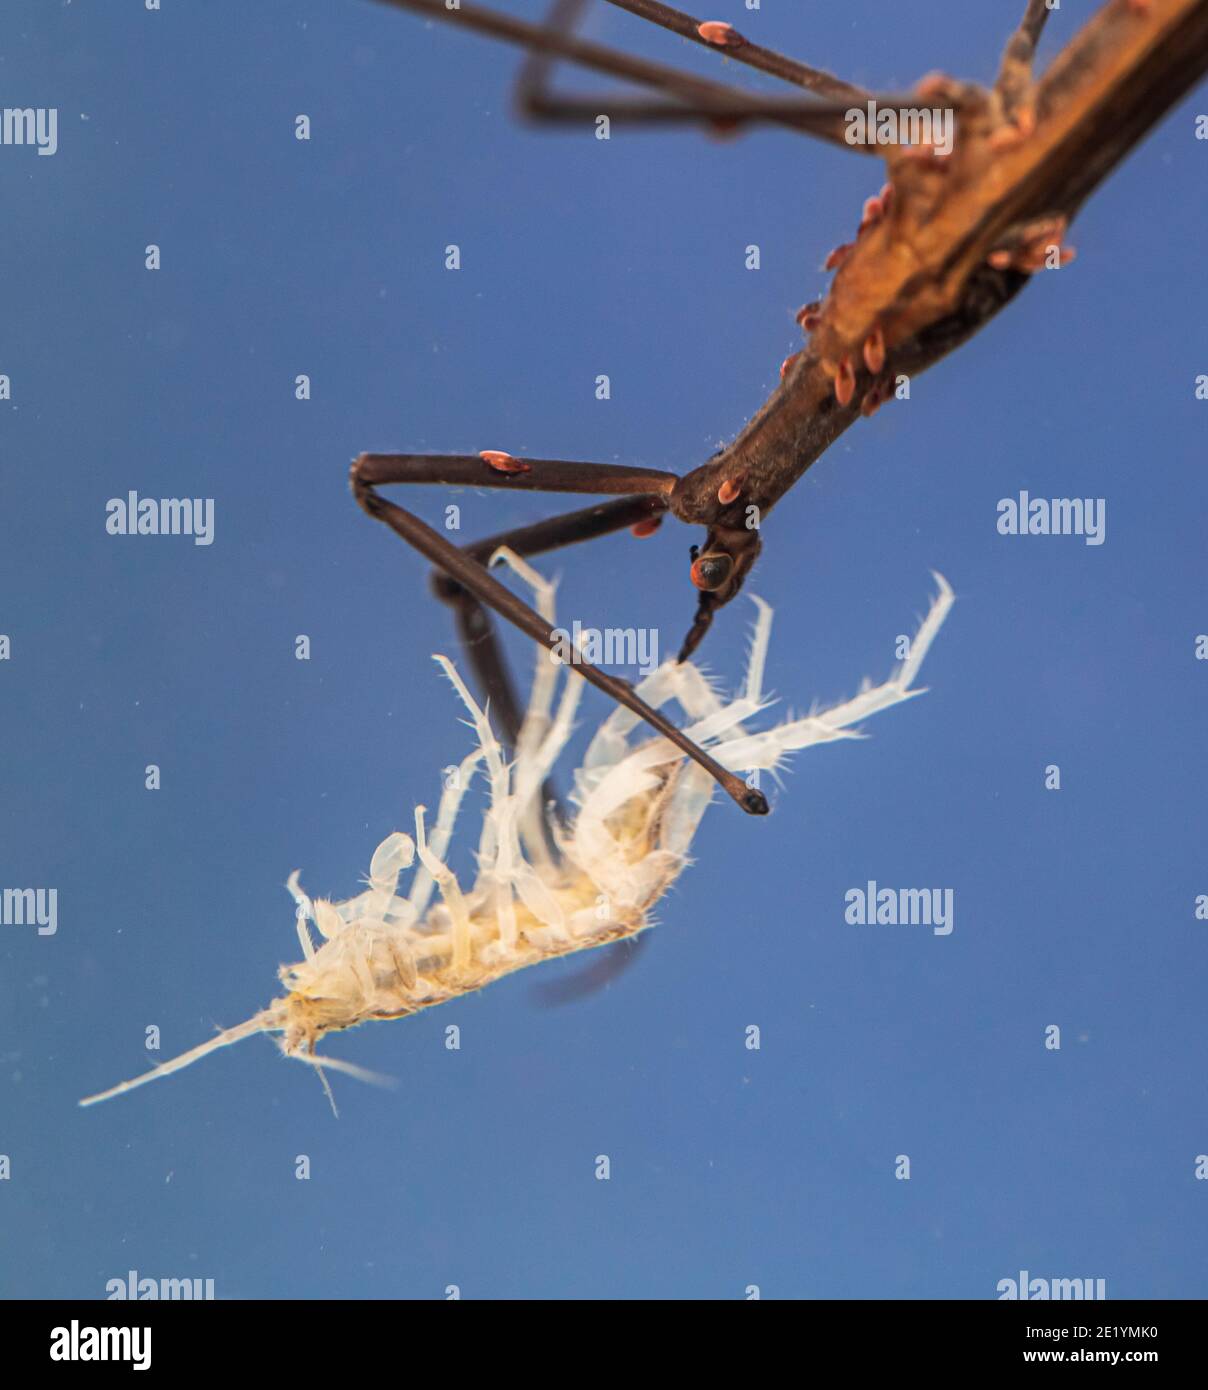 Needle bug Stock Photo